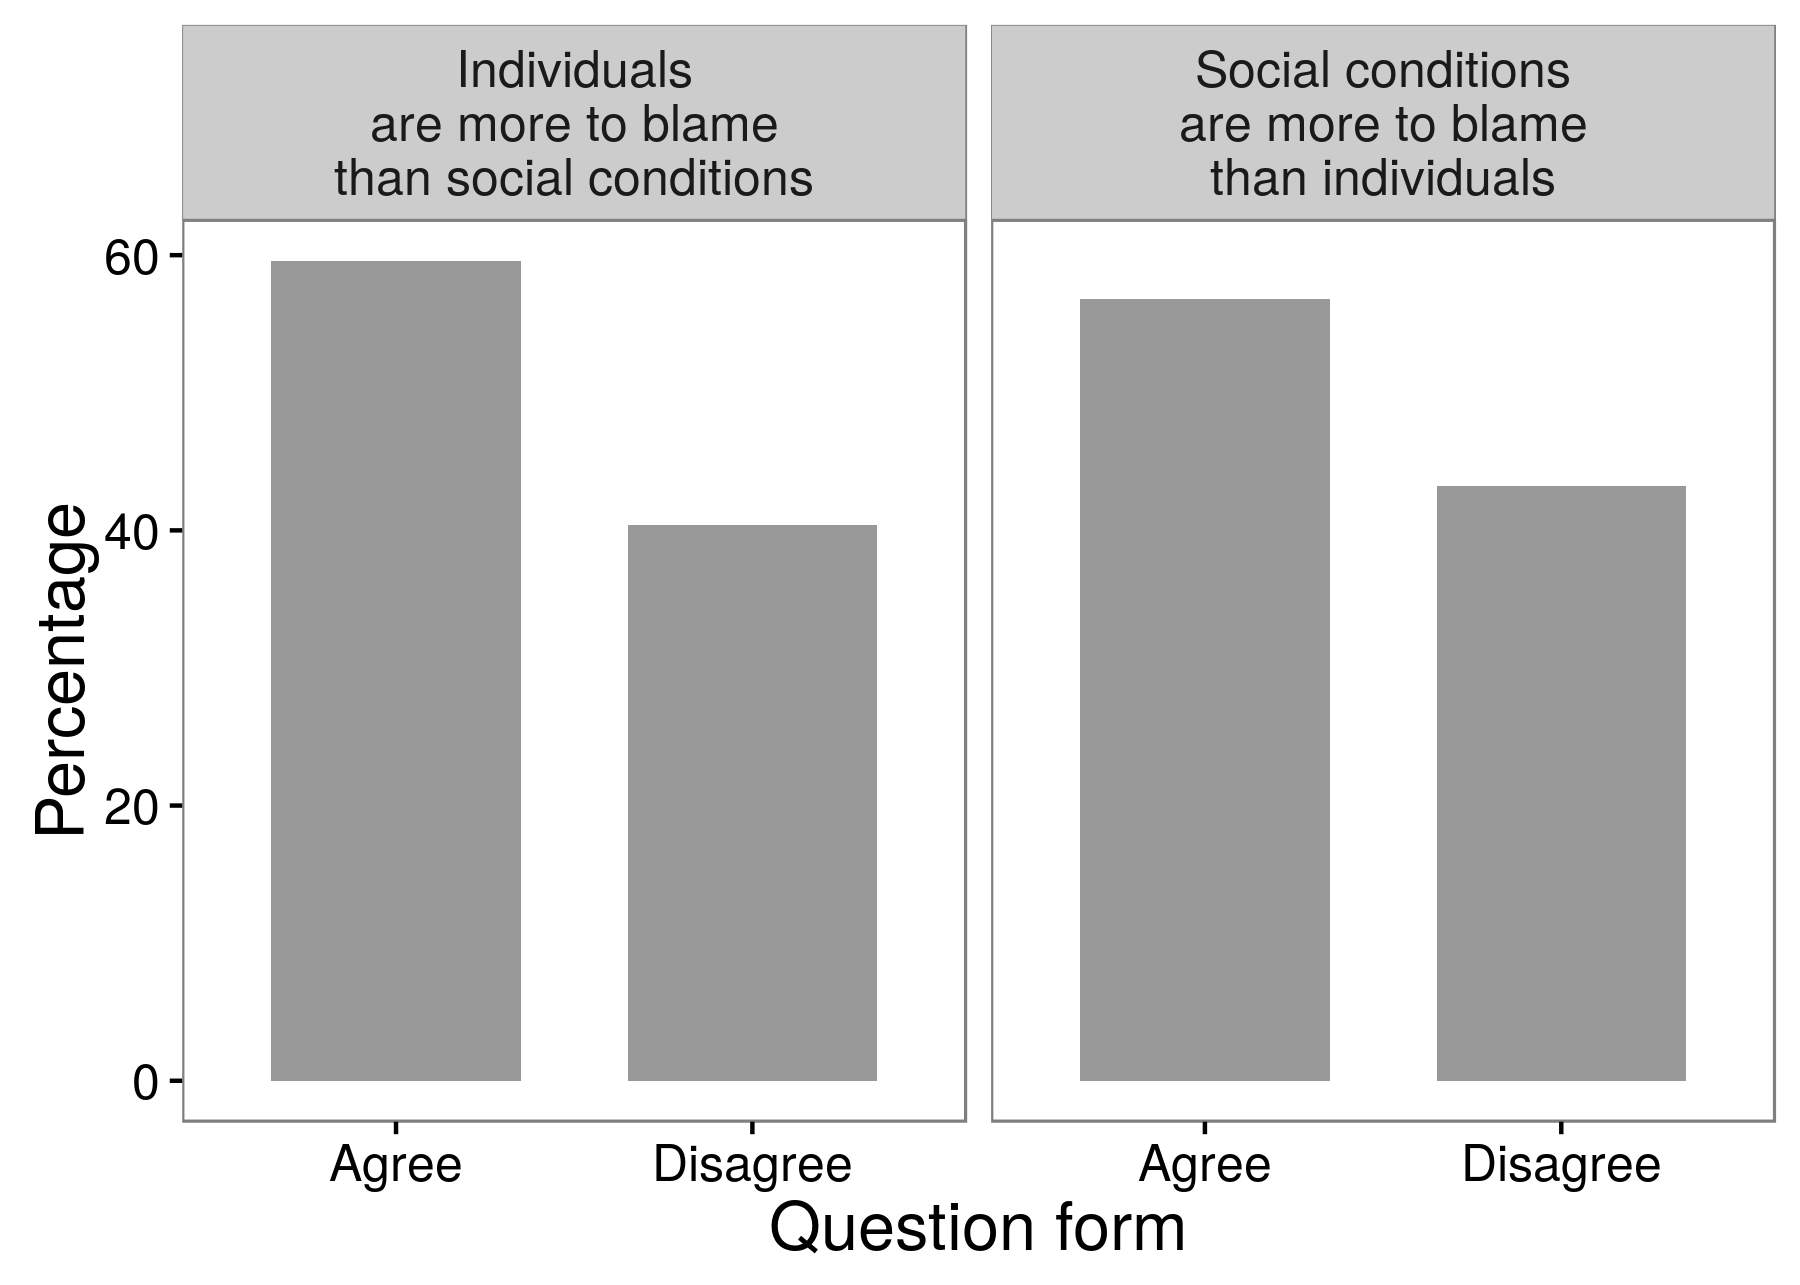 Obrázek 3.3: Výsledky výzkumného šetření ukazují, že výzkumníci mohou získat různé odpovědi v závislosti na tom, jak přesně kladli otázku. Většina respondentů se shodla na tom, že jednotlivci mají víc víc než sociální podmínky pro trestnou činnost a bezpráví. A většina respondentů souhlasila s opakem: že sociální podmínky jsou zodpovědnější než jednotlivci. Přizpůsobeno od Schuman a Presser (1996), tabulka 8.1.